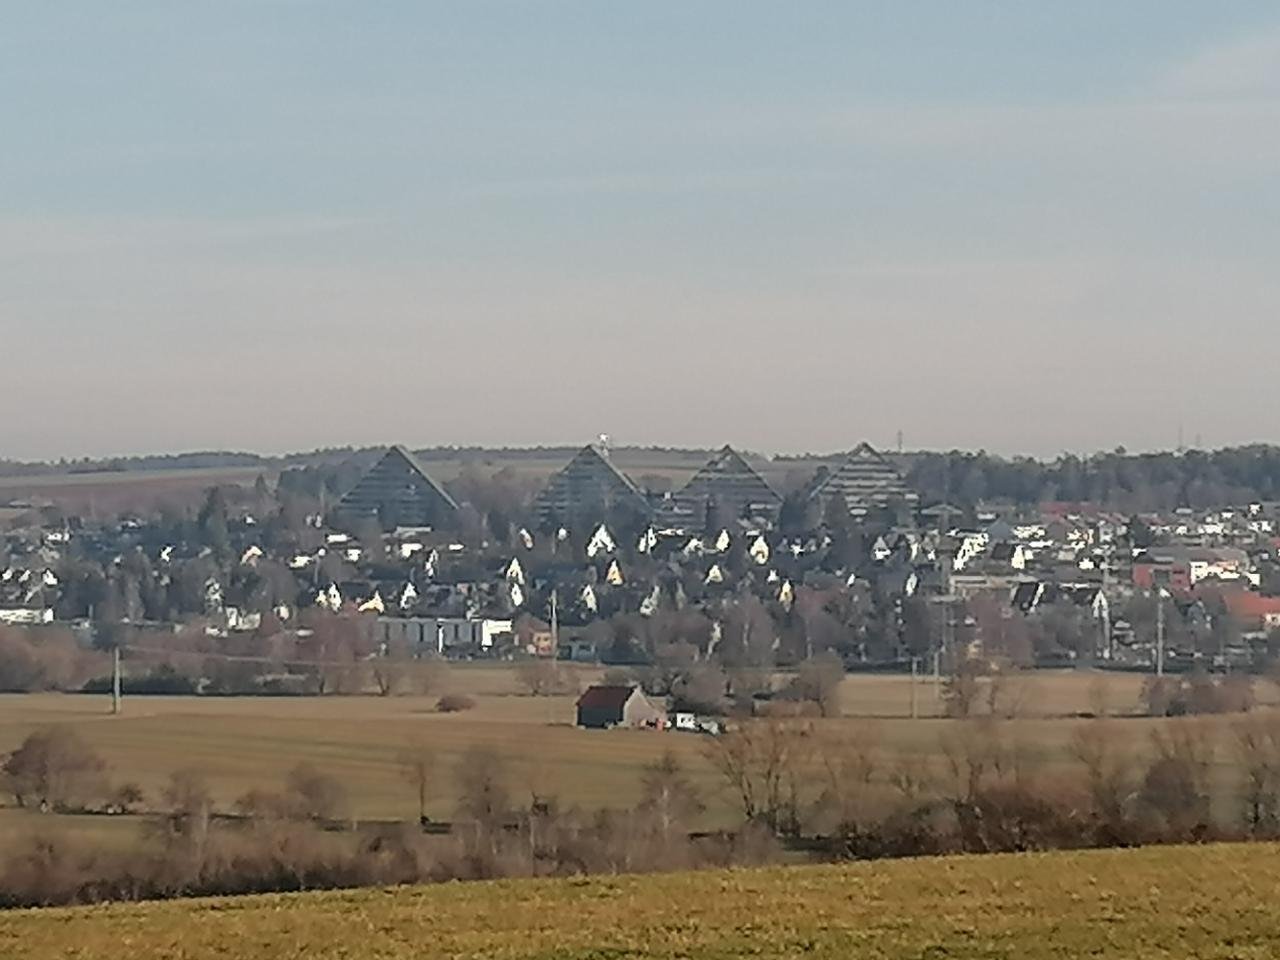 Aussichtspunkt in Landauf, LandApp BW App spotted by Harry Schneckenburger on 18.12.2020